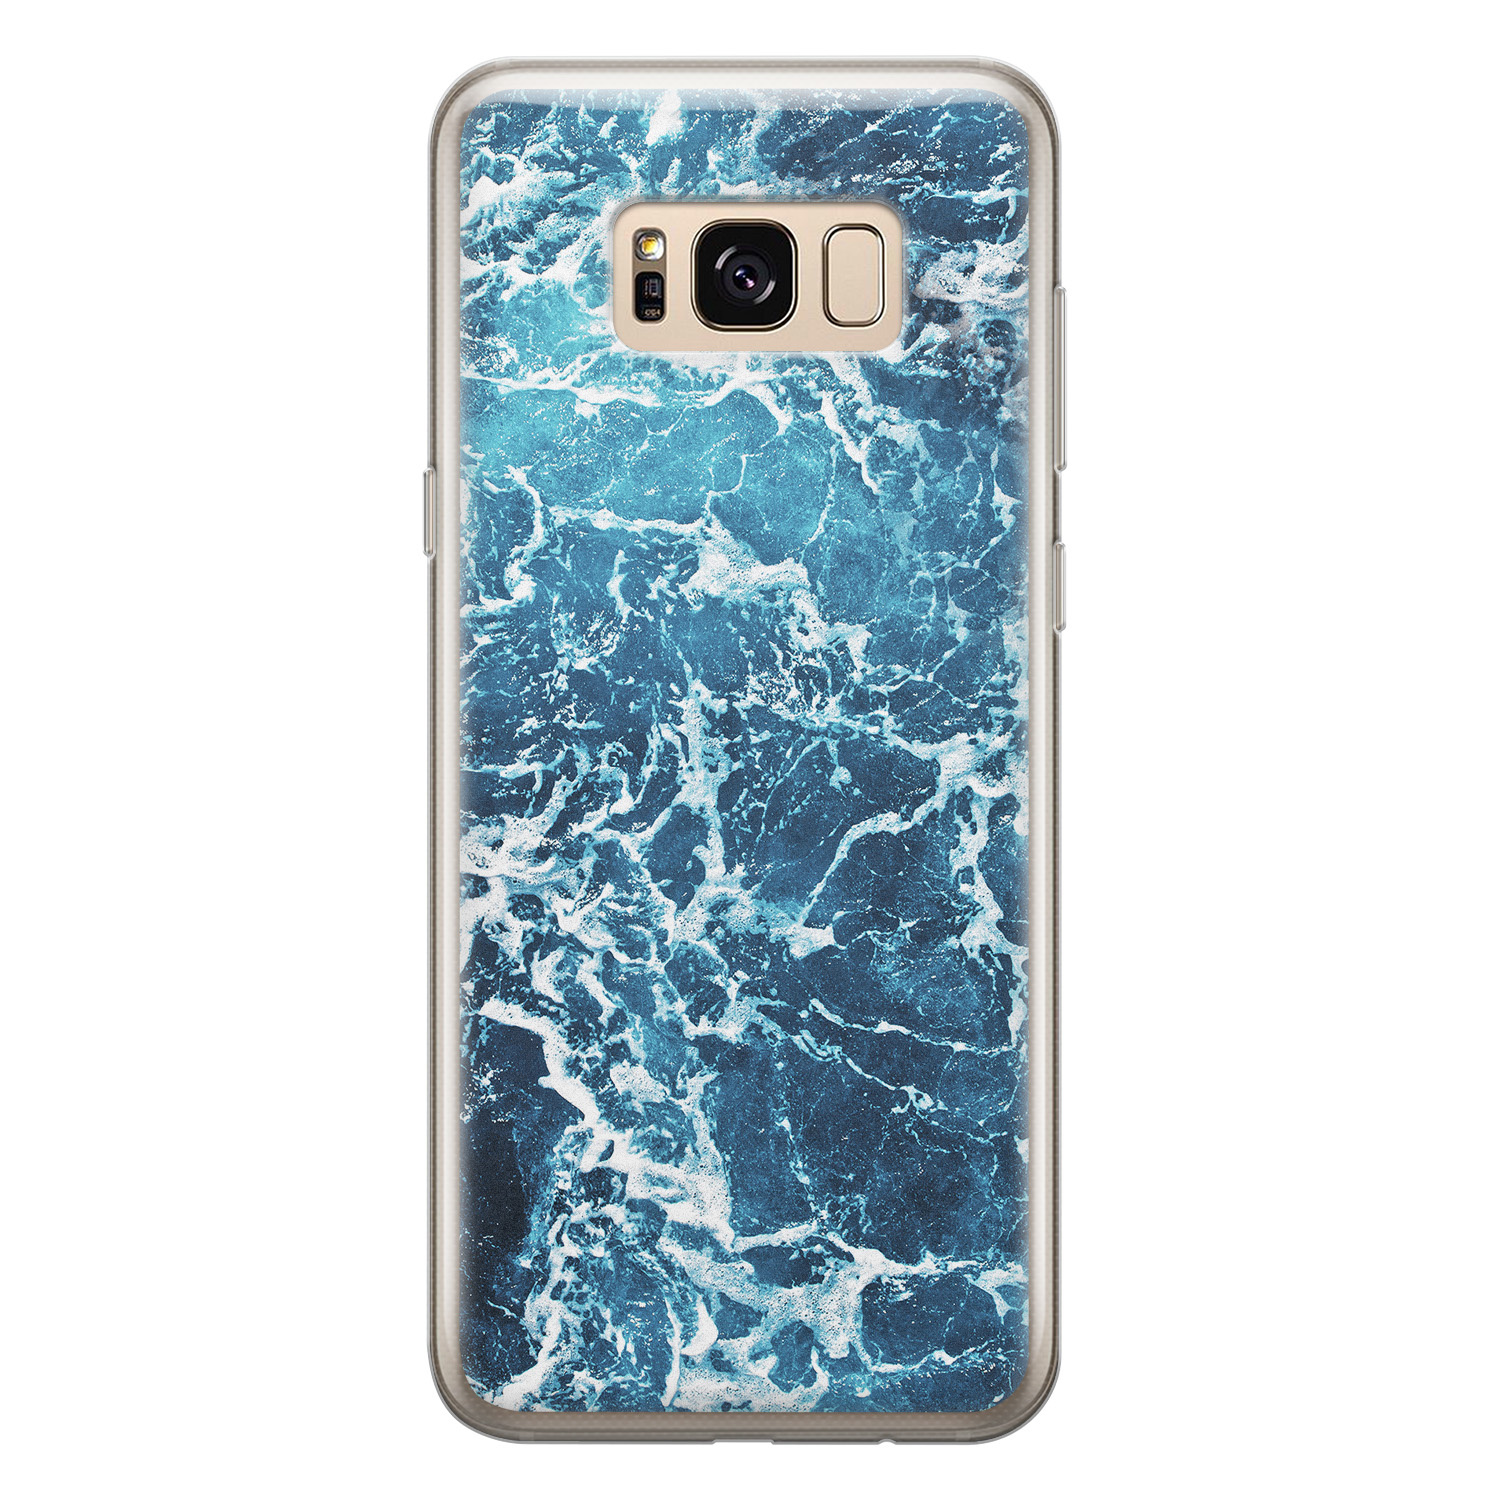 Leuke Telefoonhoesjes Samsung Galaxy S8 siliconen hoesje - Ocean blue